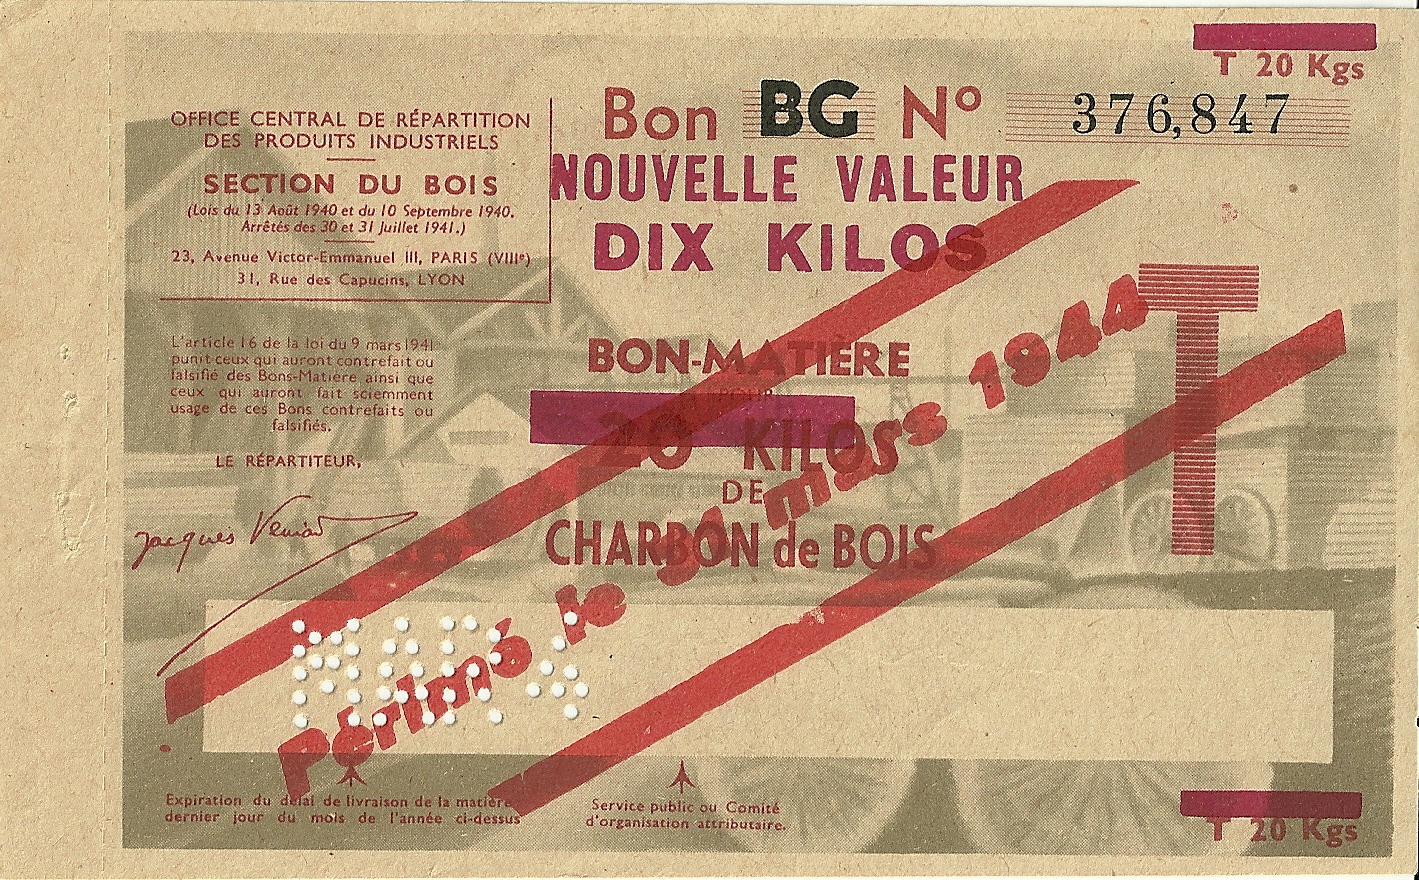 SECTION DU BOIS - Bon BG - BON-MATIERE POUR 20 KILOS DE CHARBON de BOIS - NOUVELLE VALEUR DIX KILOS - 376,847